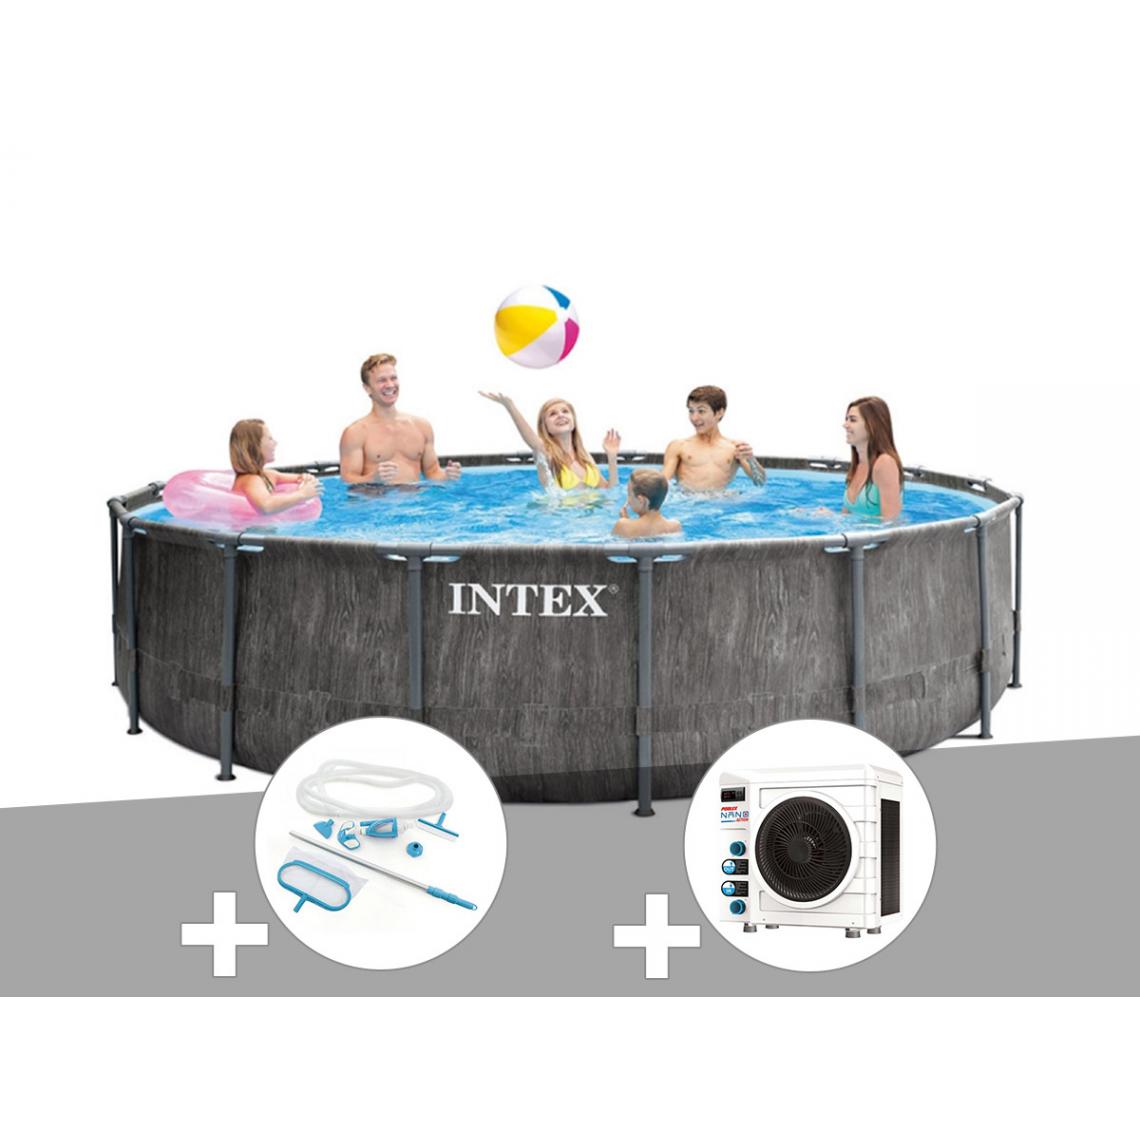 Intex - Kit piscine tubulaire Intex Baltik ronde 4,57 x 1,22 m + Kit d'entretien + Pompe à chaleur - Piscine Tubulaire